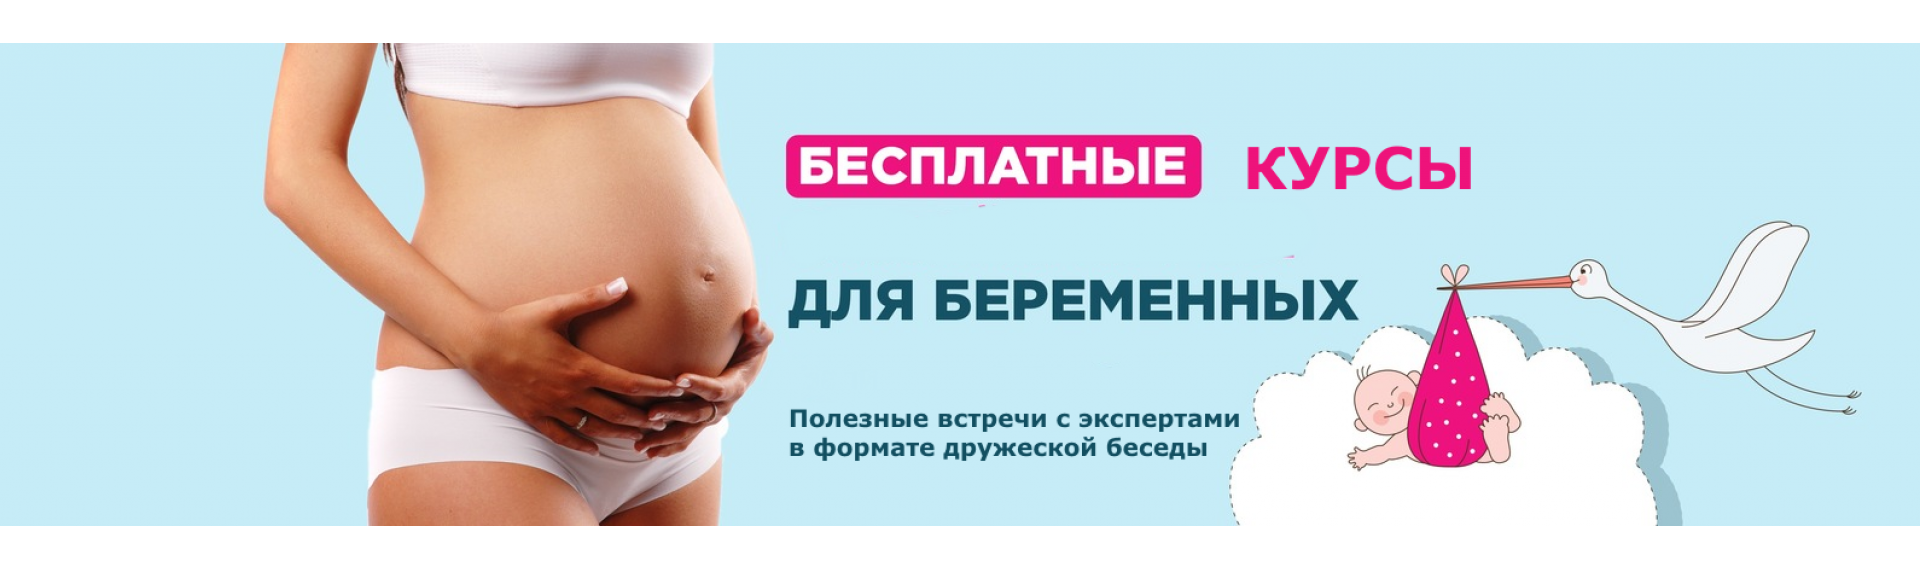 Курс легкие роды. Реклама для беременных. Курсы по родам для беременных. Беременные в рекламе. Курсы подготовки к родам.